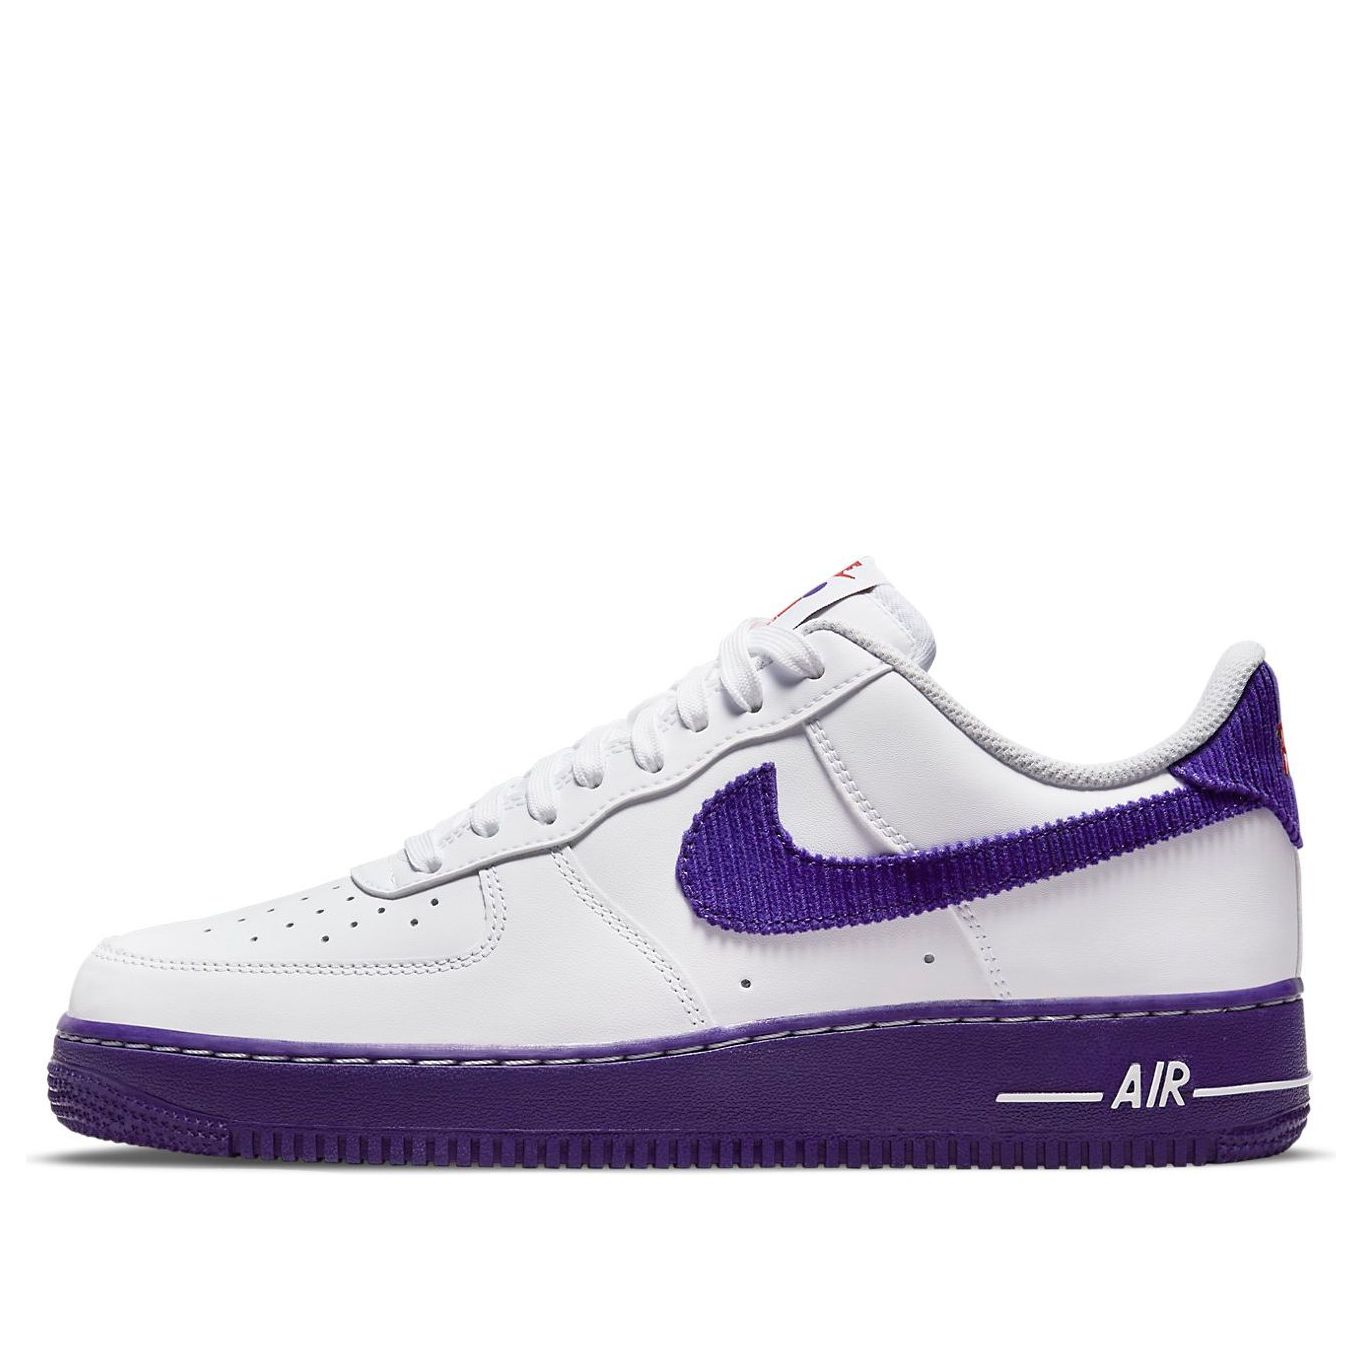 Nike Air Force 1 '07 LV8 EMB 'White Court Purple' DB0264-100